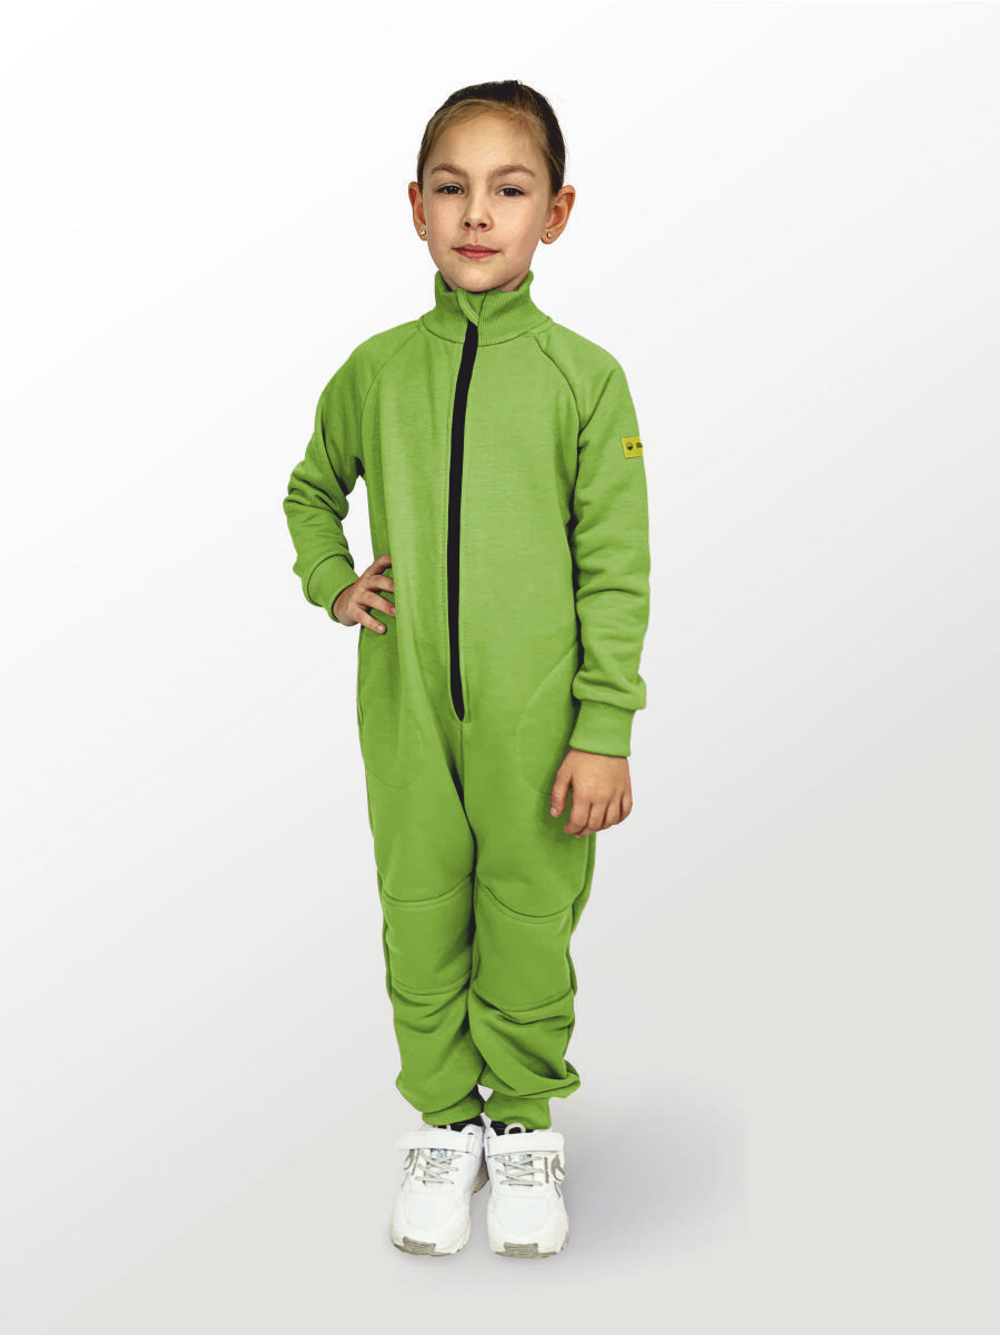 Комбинезон для детей, модель №1, рост 98 см, зеленый